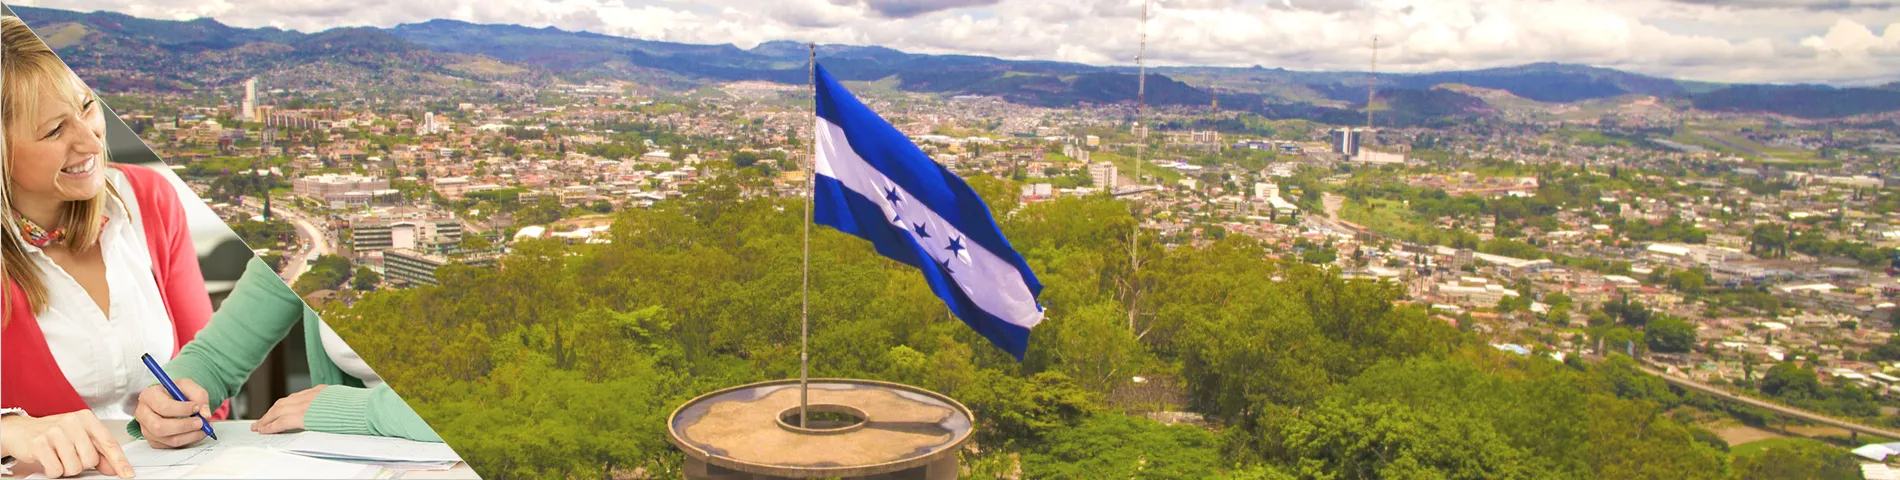 Honduras - Learn a Language & Live with Teacher